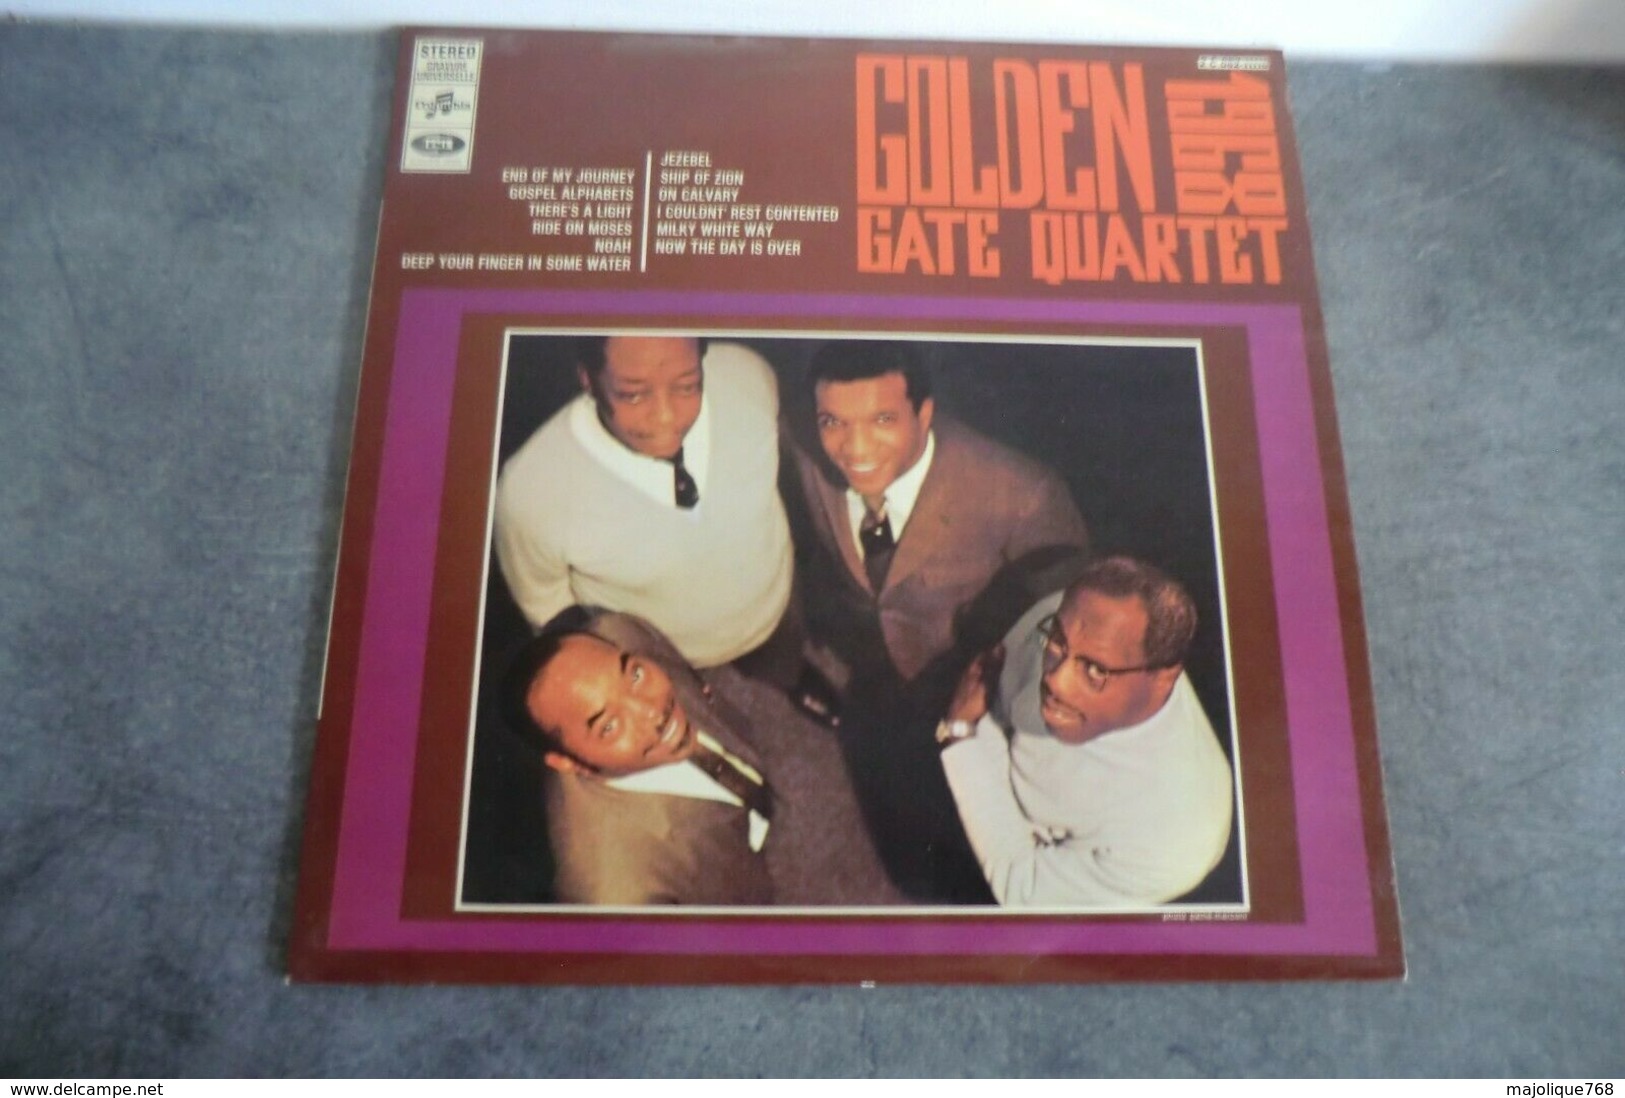 Disque - Golden Gate Quartet 1968 - Columbia 2 C 062-11116 - - Chants Gospels Et Religieux